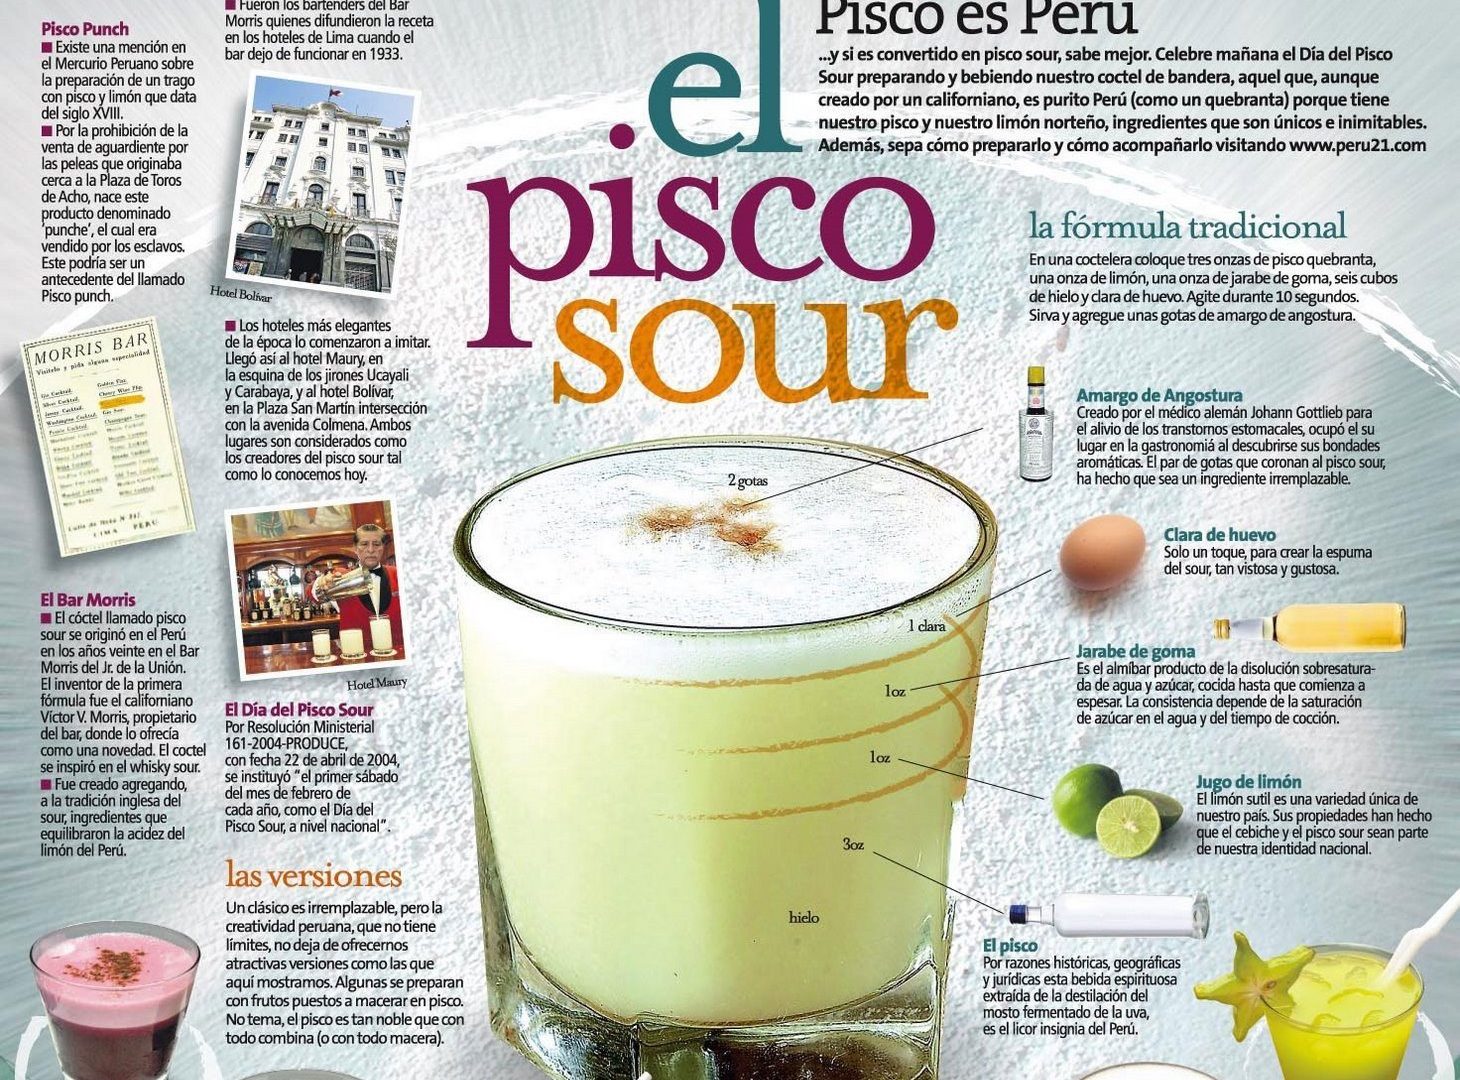 Si chiama Pisco ed è la bevanda nazionale del Perù